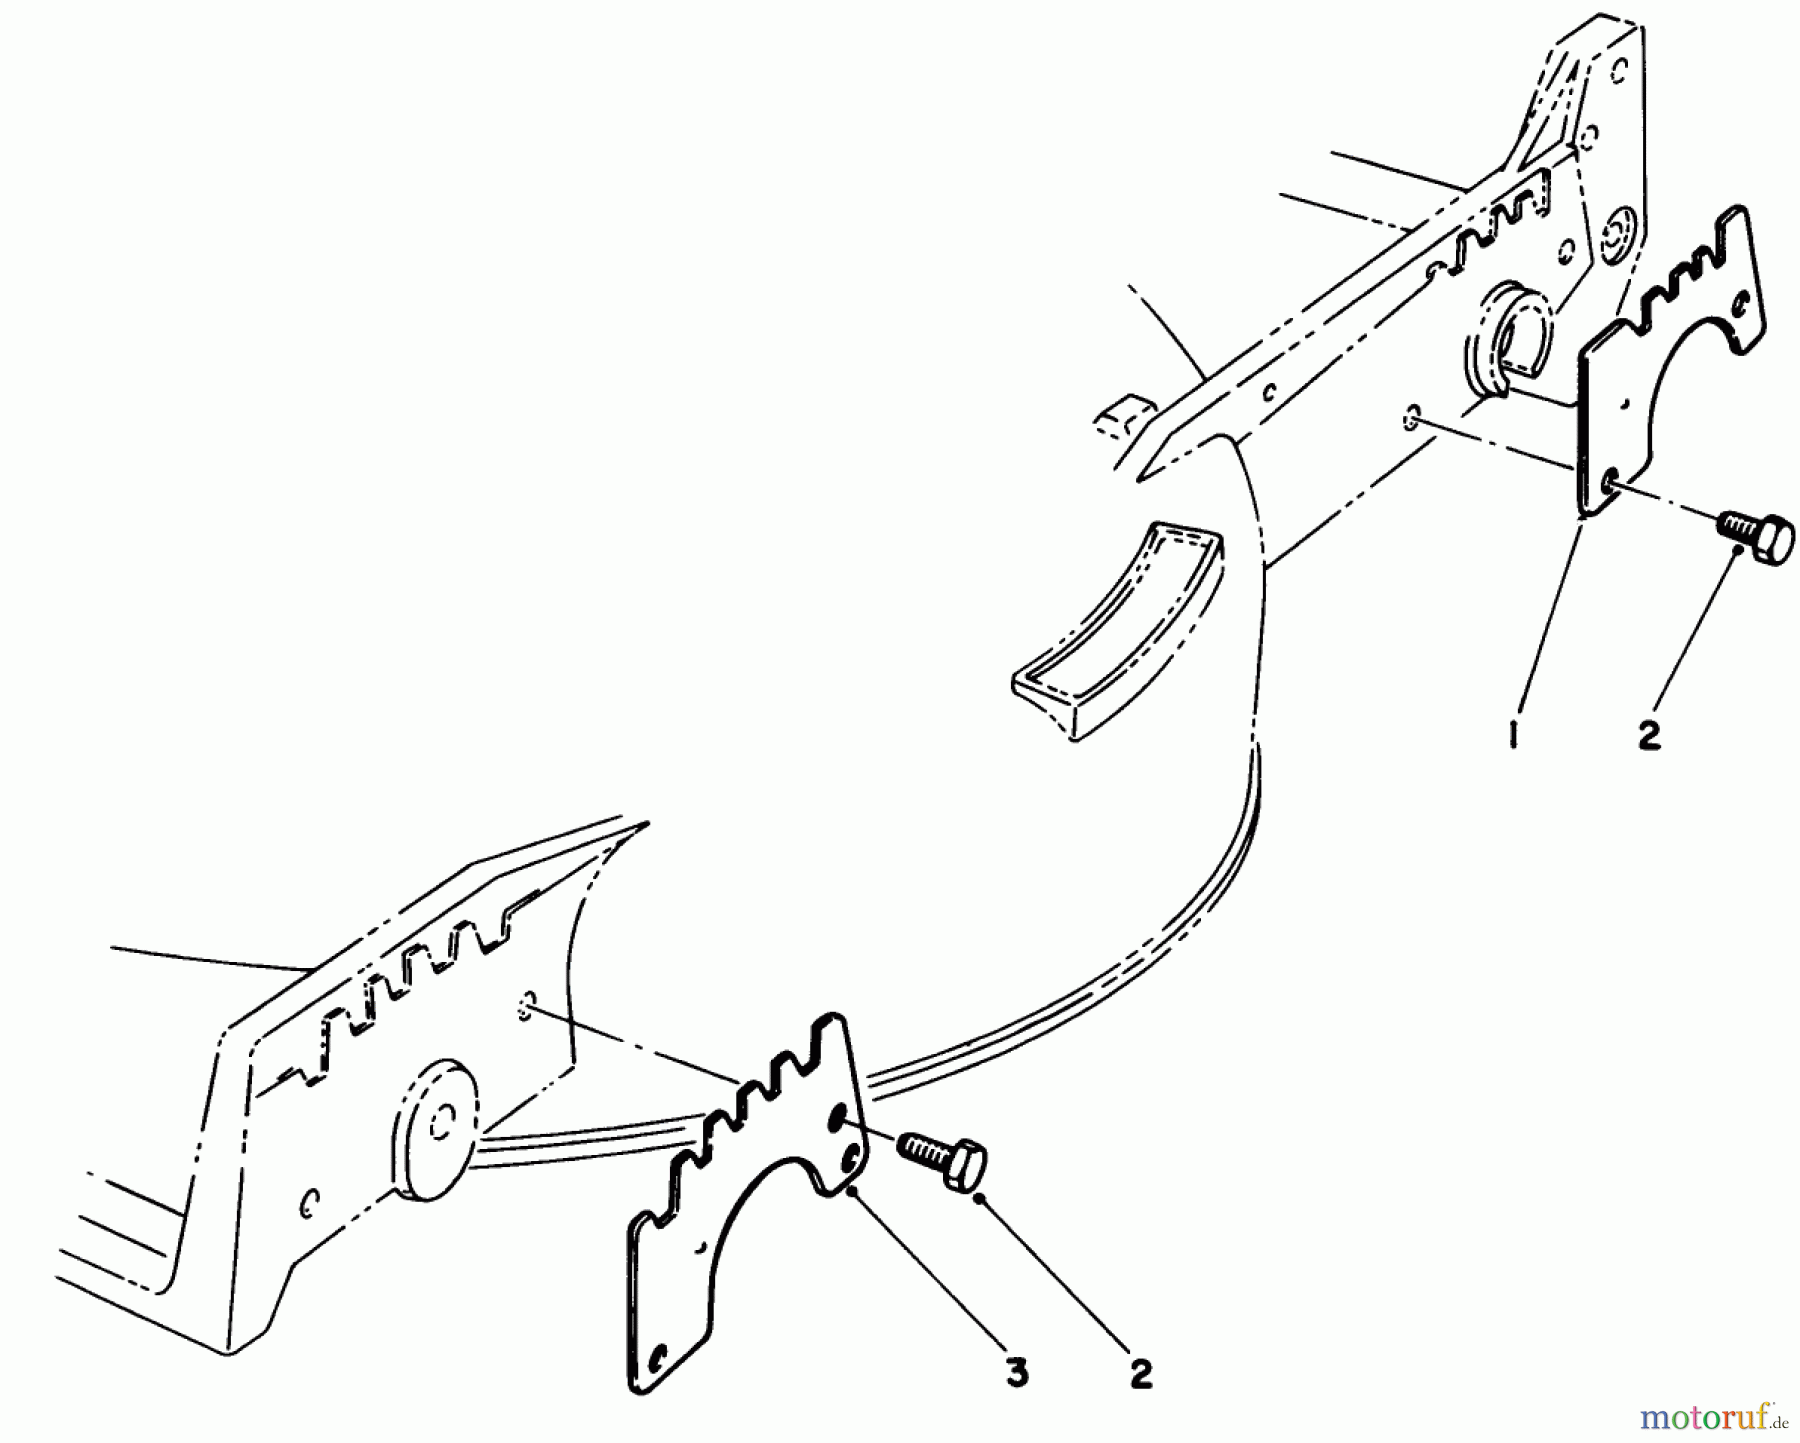  Toro Neu Mowers, Walk-Behind Seite 1 20611 - Toro Lawnmower, 1989 (9000001-9999999) WEAR PLATE KIT NO. 49-4080 (OPTIONAL)